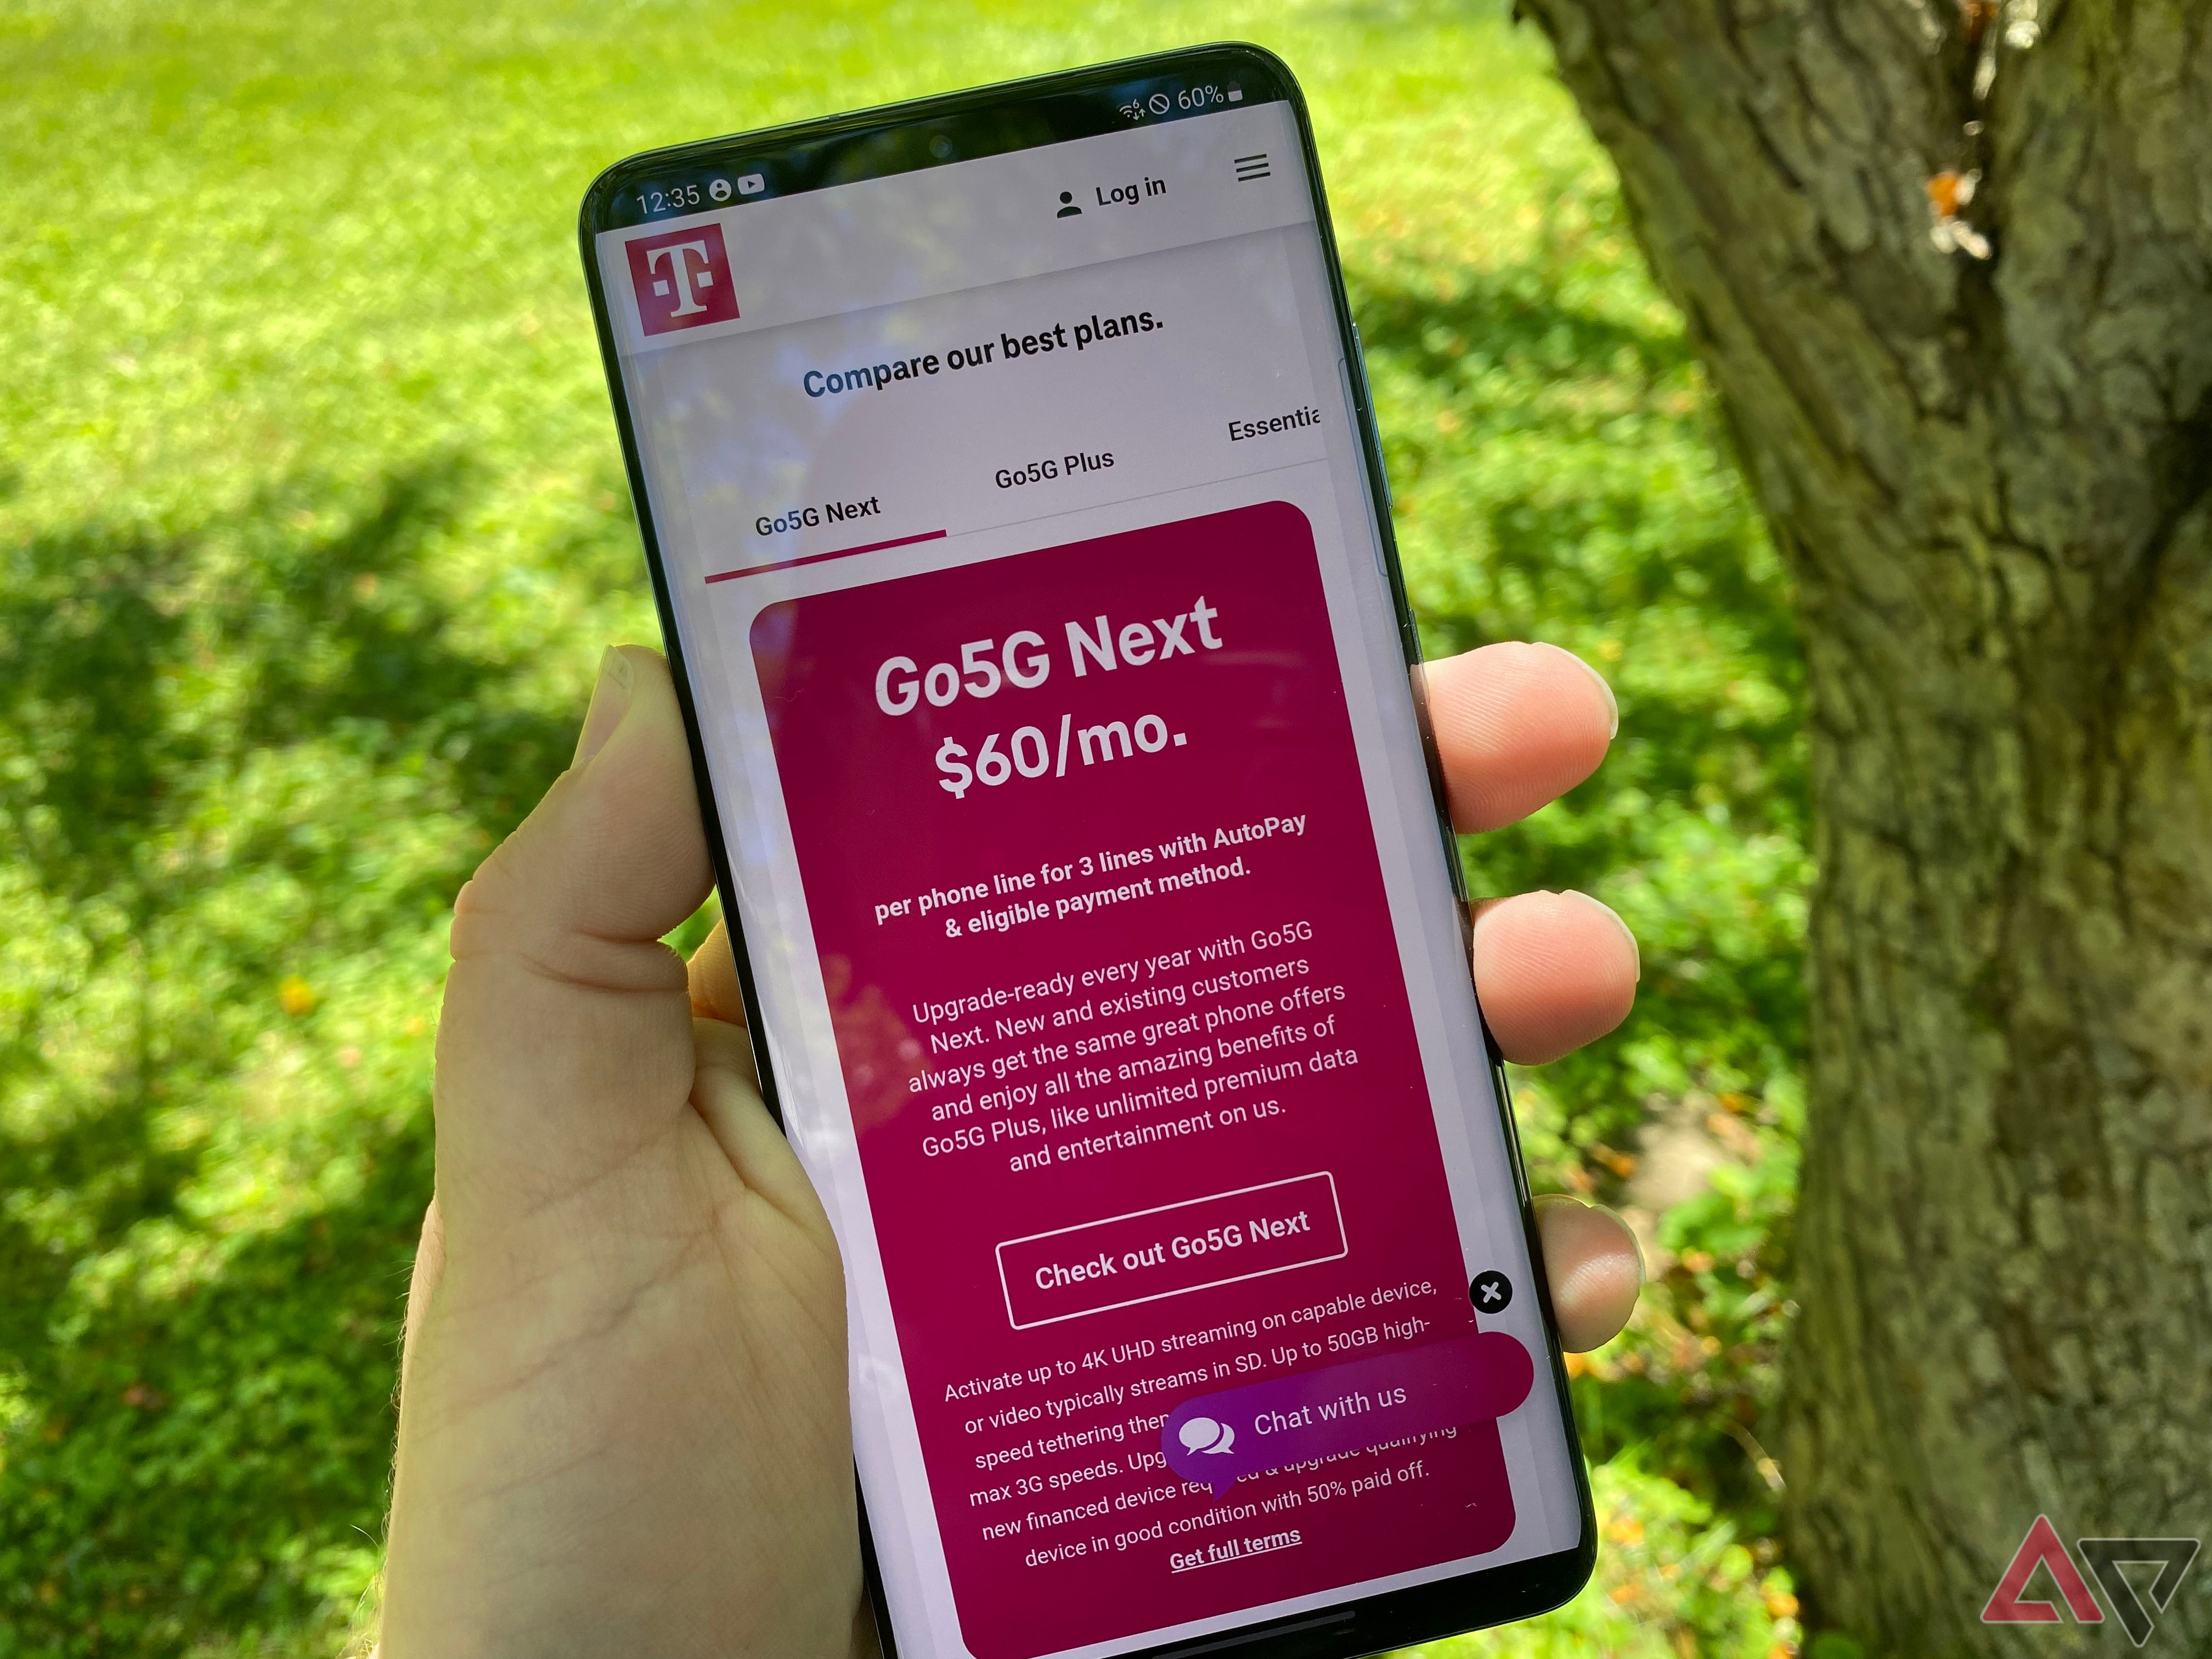 Planos da T-Mobile exibidos na tela de um telefone